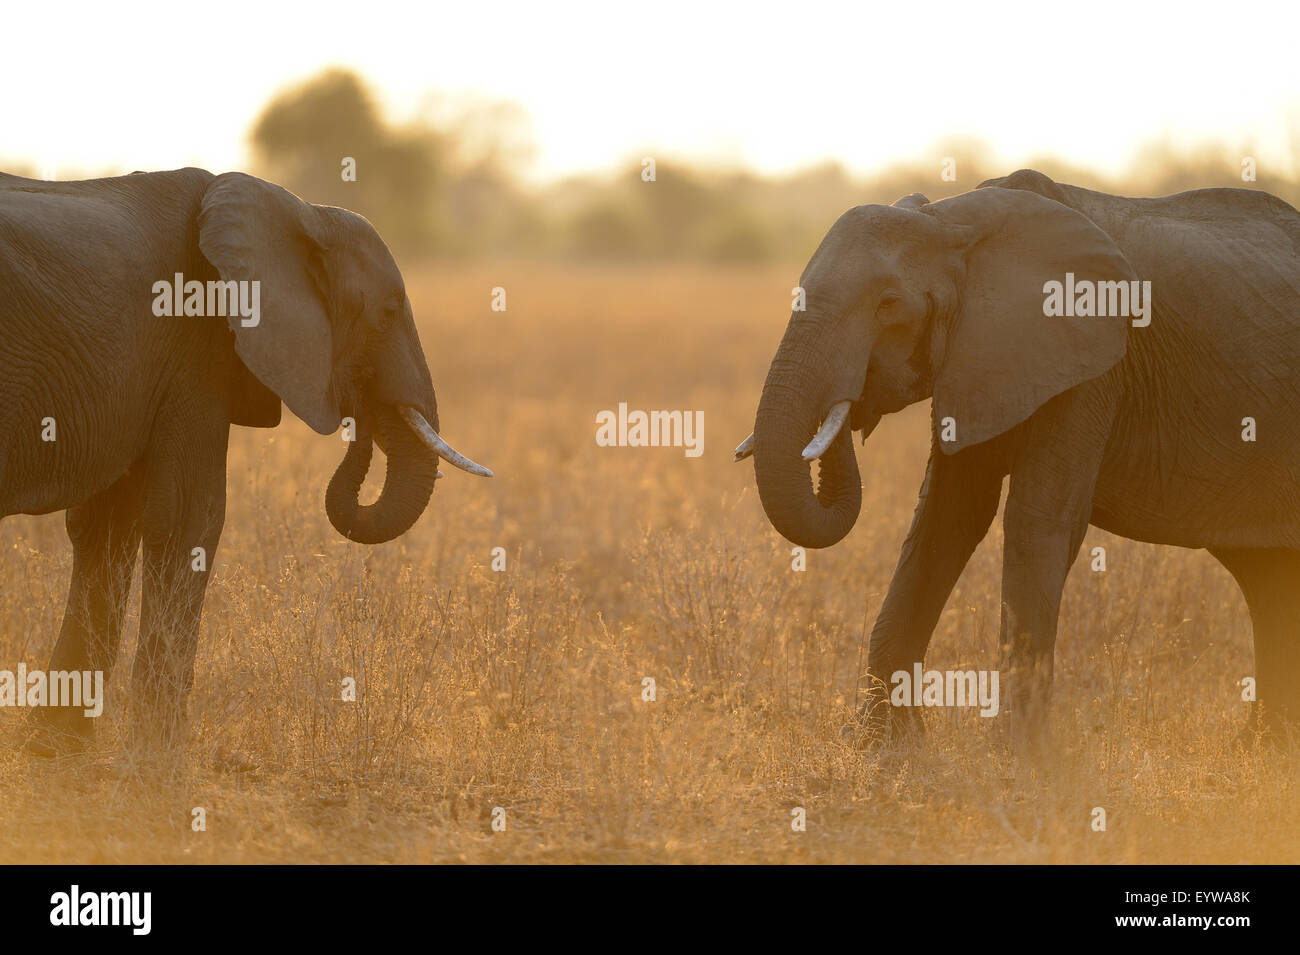 Afrikanische Elefanten (Loxodonta Africana), einander zugewandt in der Hintergrundbeleuchtung, staubige Luft, South Luangwa Nationalpark, Sambia Stockfoto